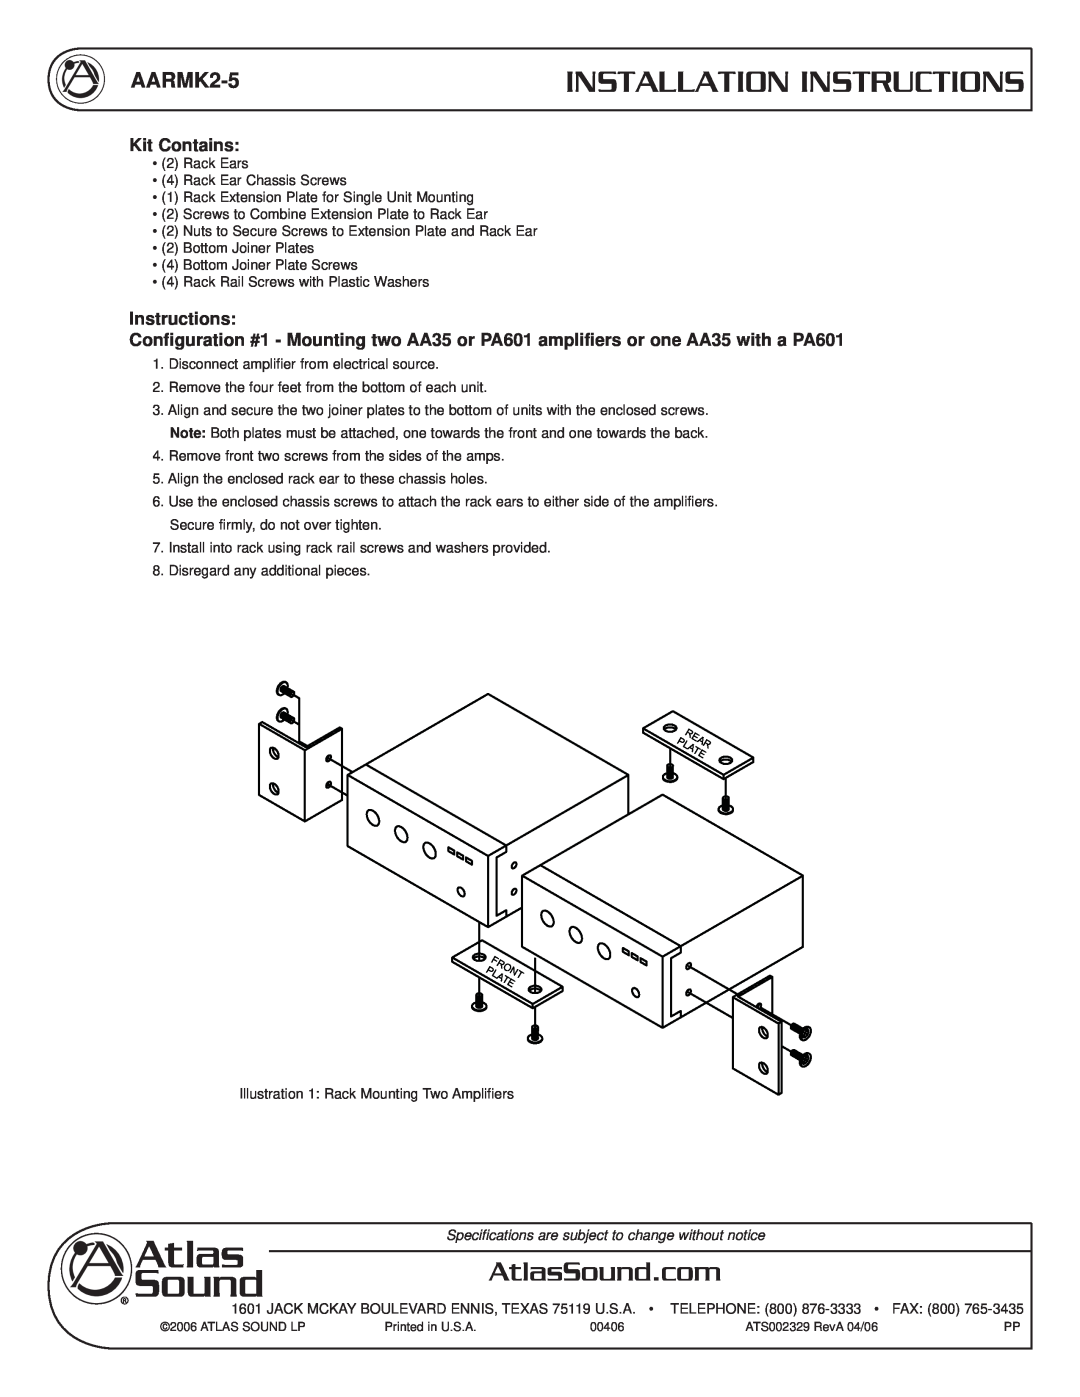 Atlas Sound AARMK2-5 installation instructions Installation Instructions, Kit Contains 